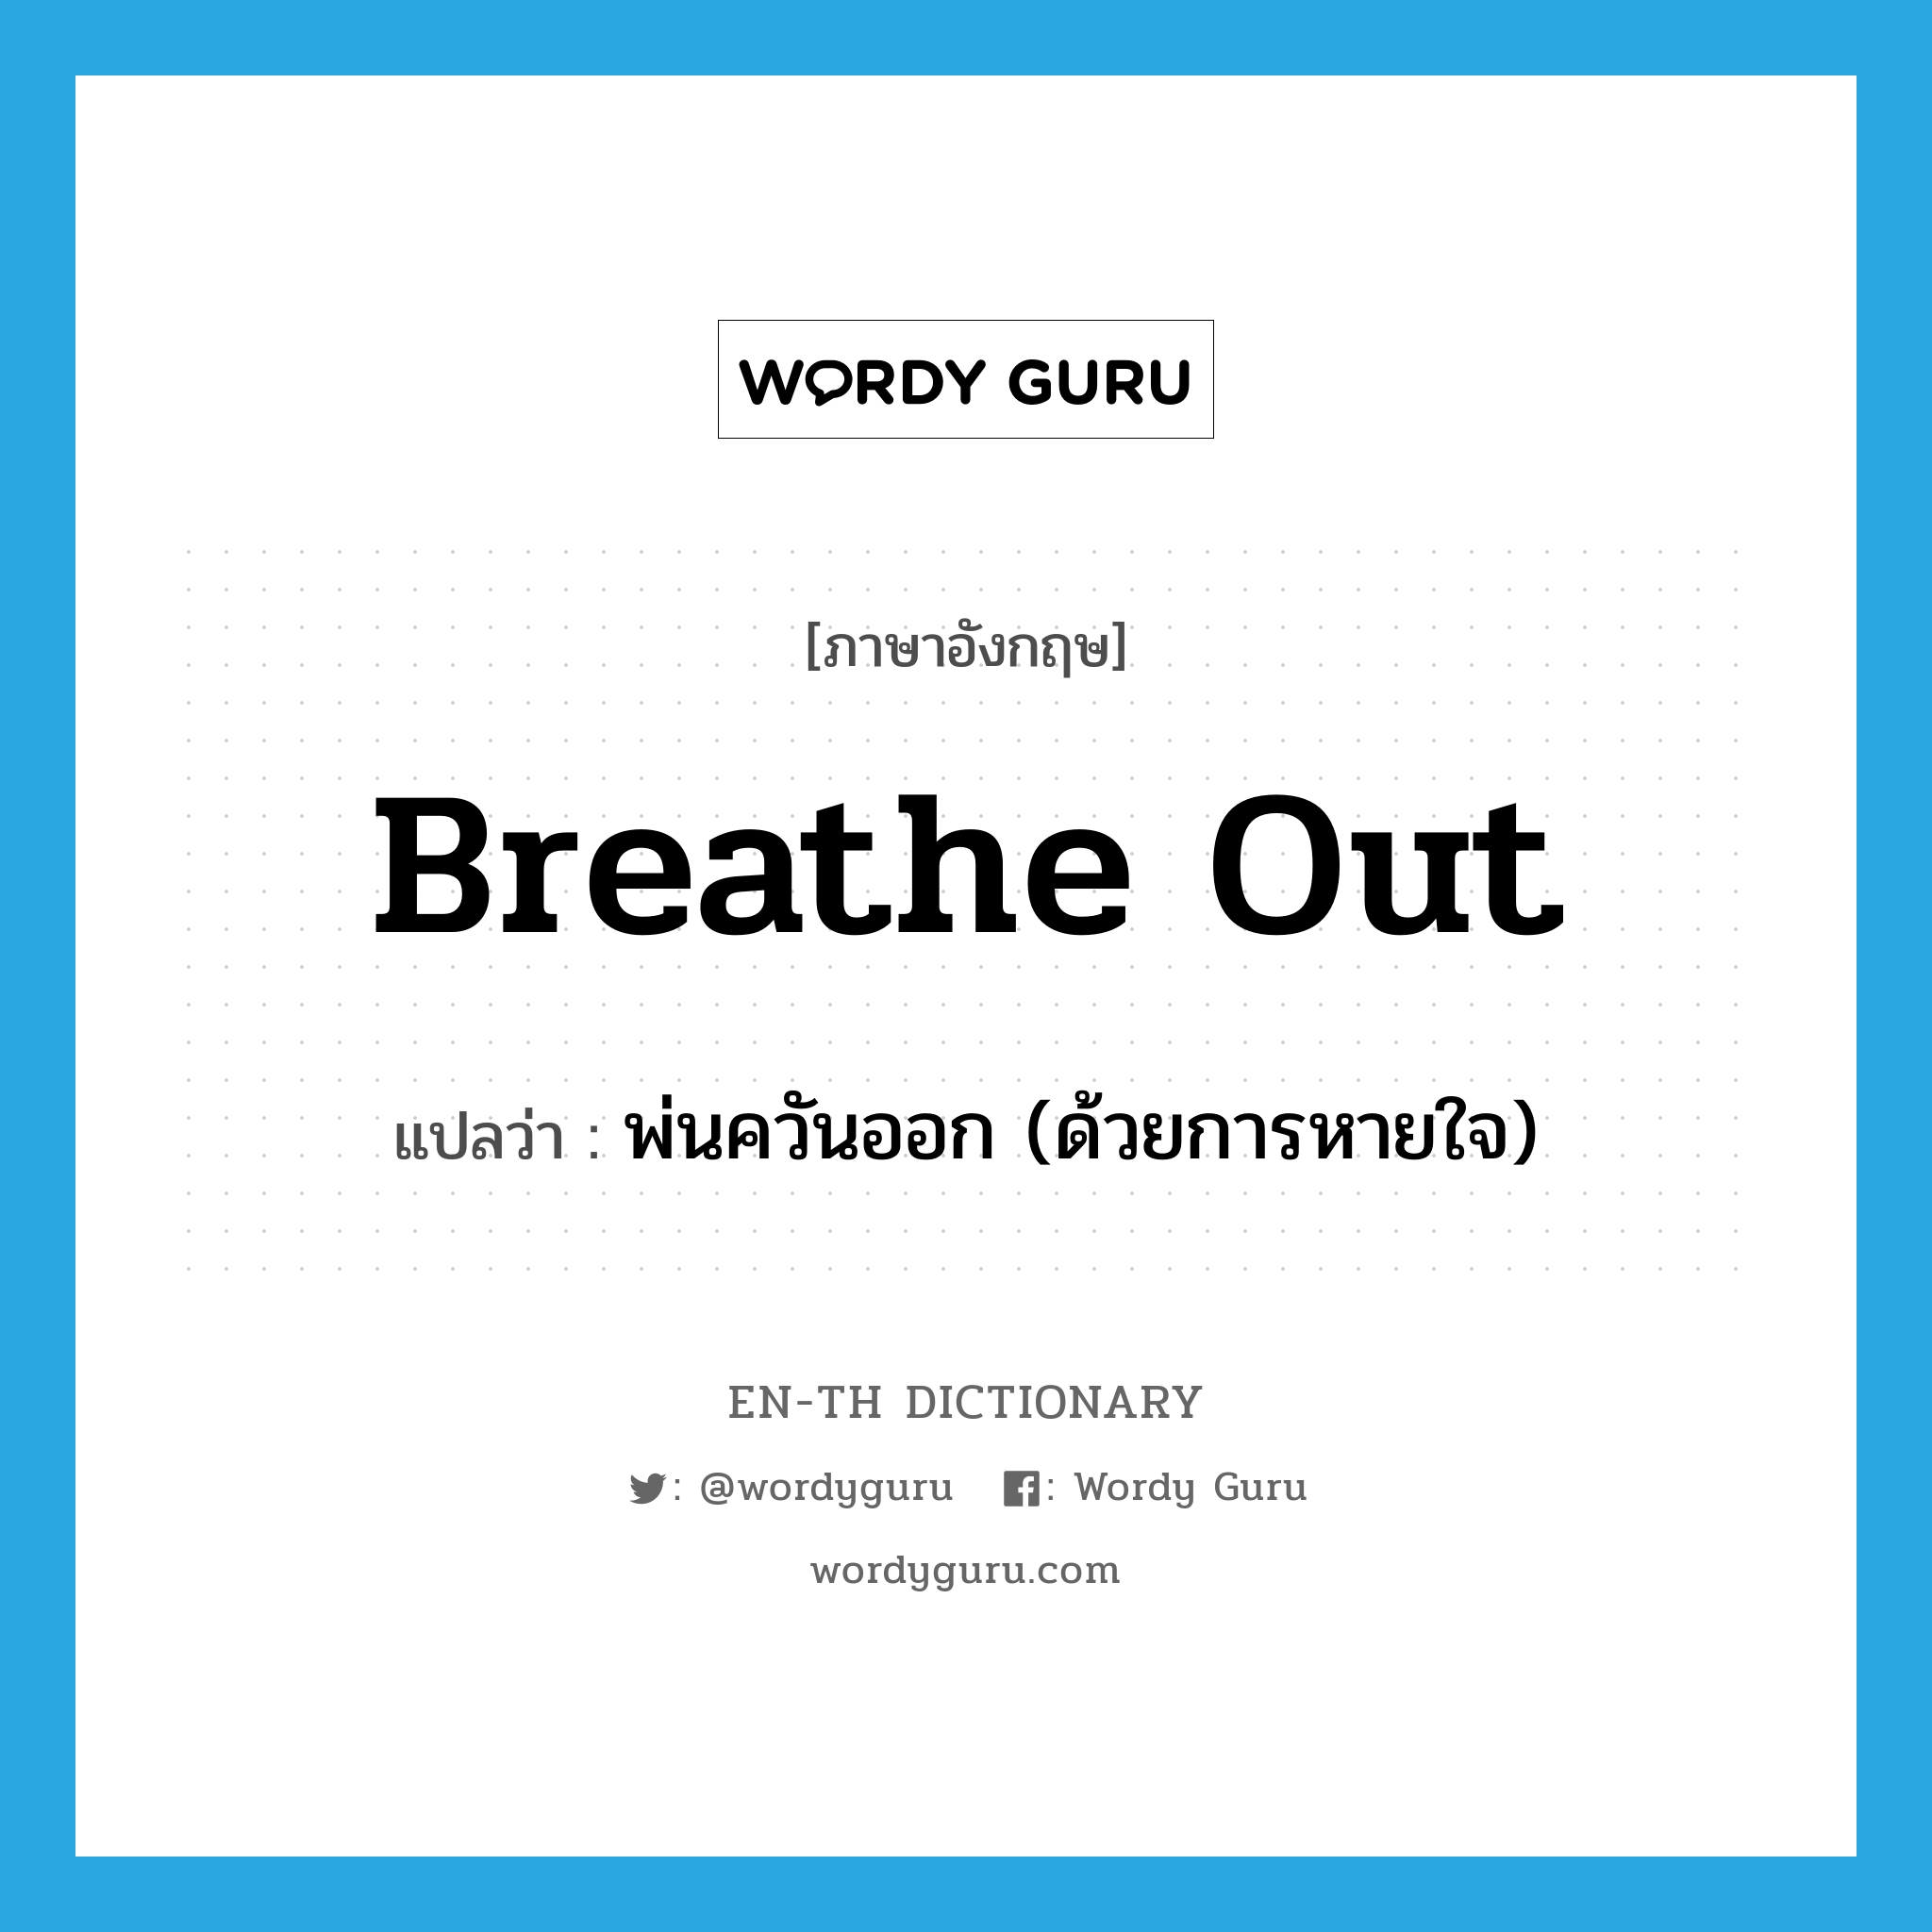 พ่นควันออก (ด้วยการหายใจ) ภาษาอังกฤษ?, คำศัพท์ภาษาอังกฤษ พ่นควันออก (ด้วยการหายใจ) แปลว่า breathe out ประเภท PHRV หมวด PHRV